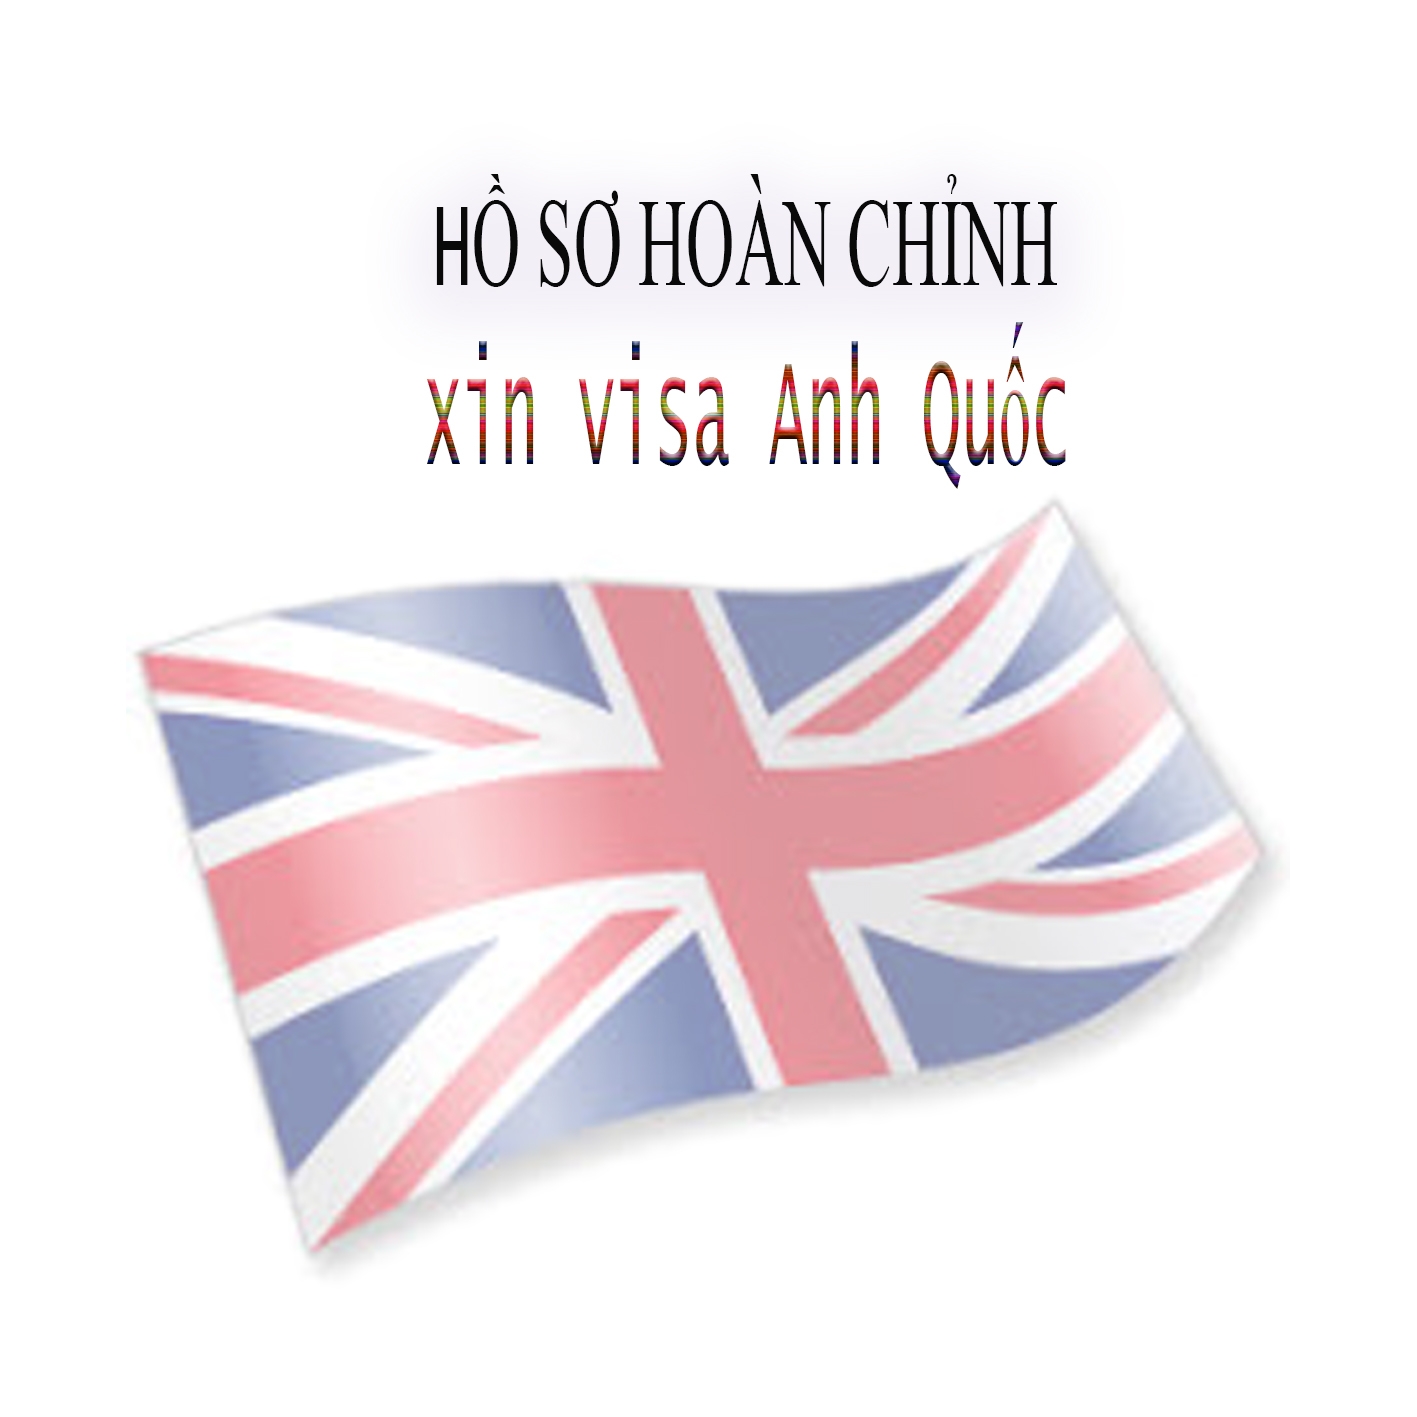 Một bộ hồ sơ hoàn chỉnh để xin visa Anh Quốc (UK)